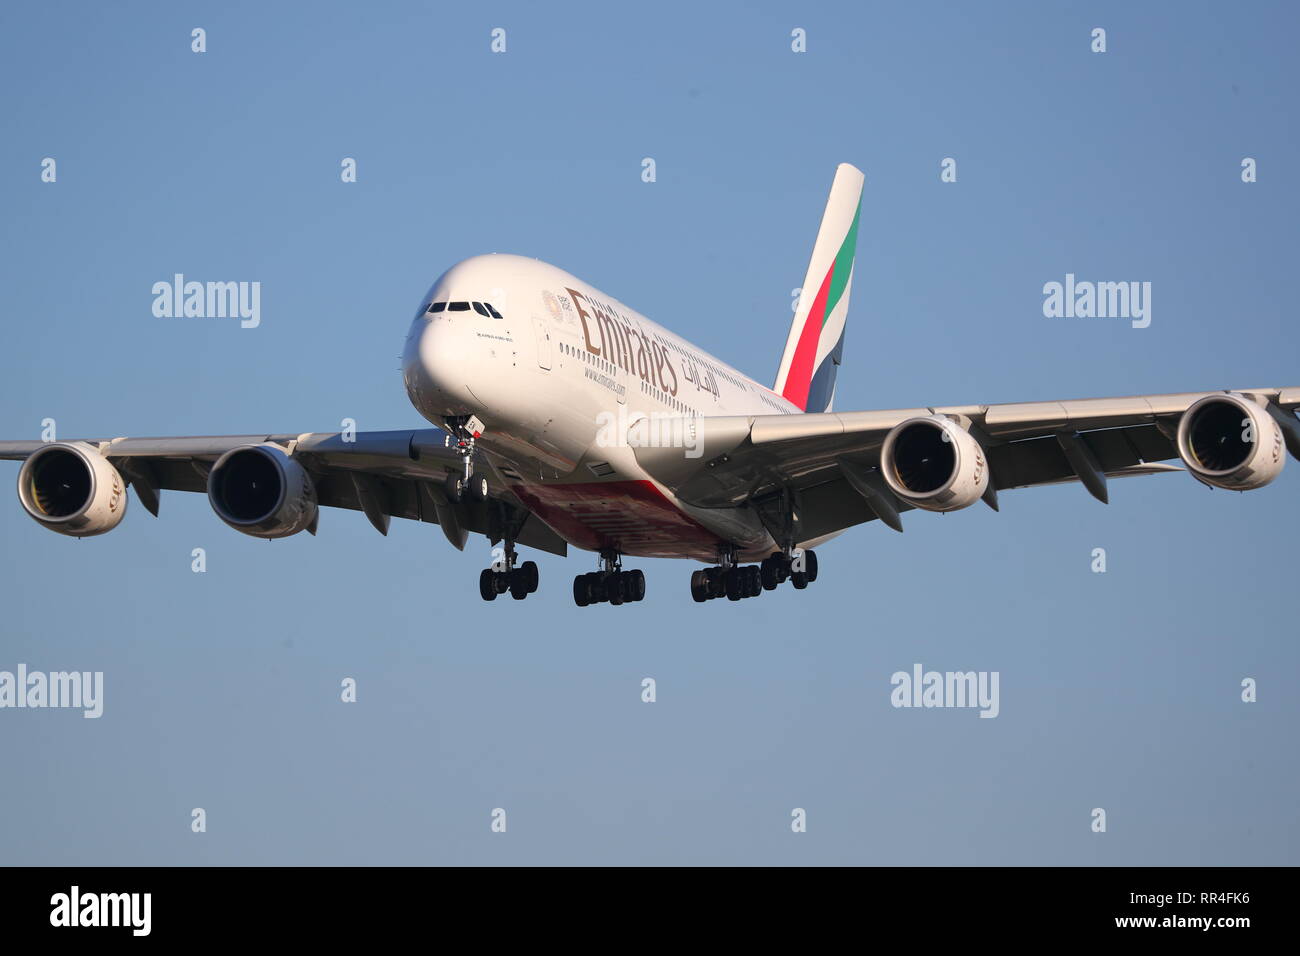 Emirates Airbus A380 A6-een el aterrizaje en el aeropuerto de Heathrow, Reino Unido Foto de stock